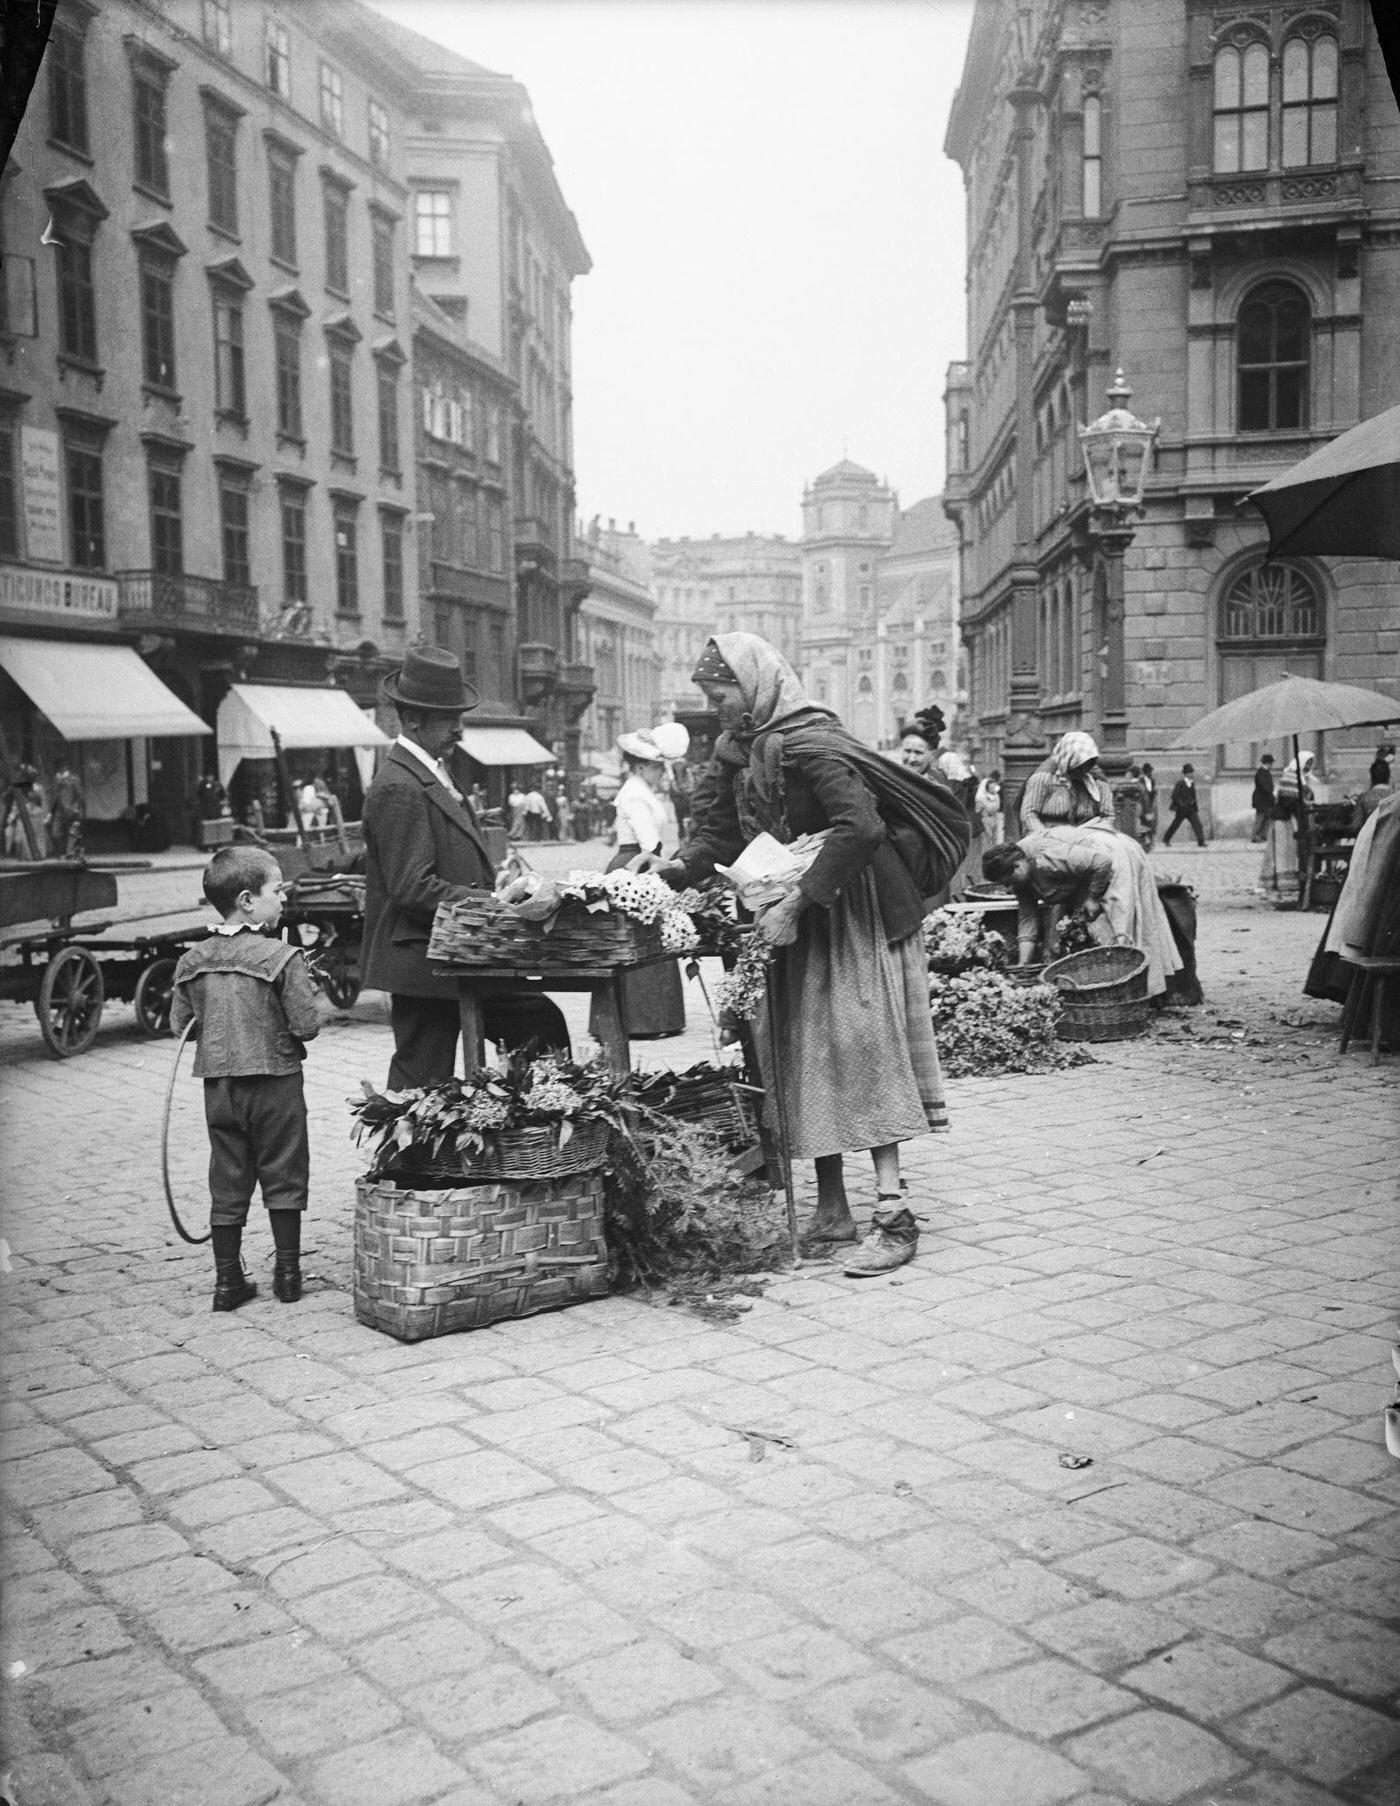 A florist at the market Am Hof, Vienna, Around 1900